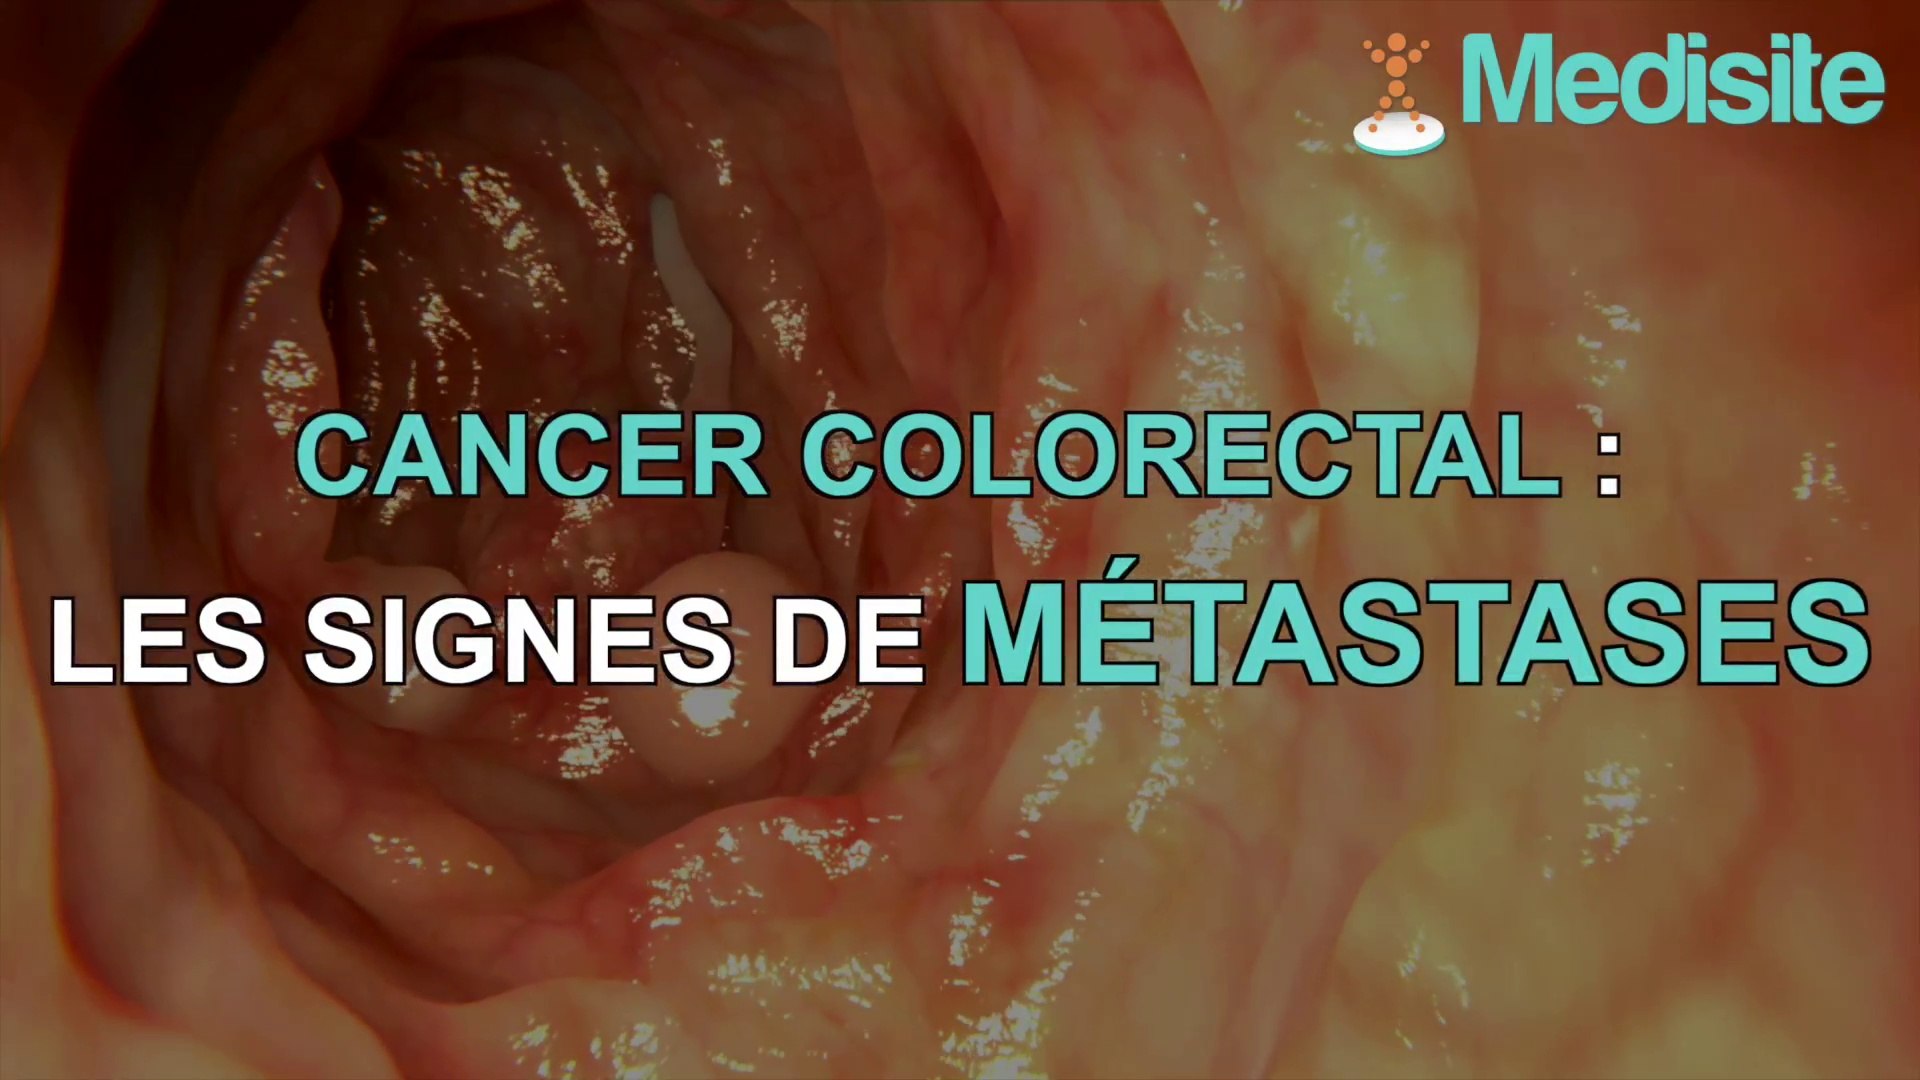 Cancer colorectal : les signes de métastases